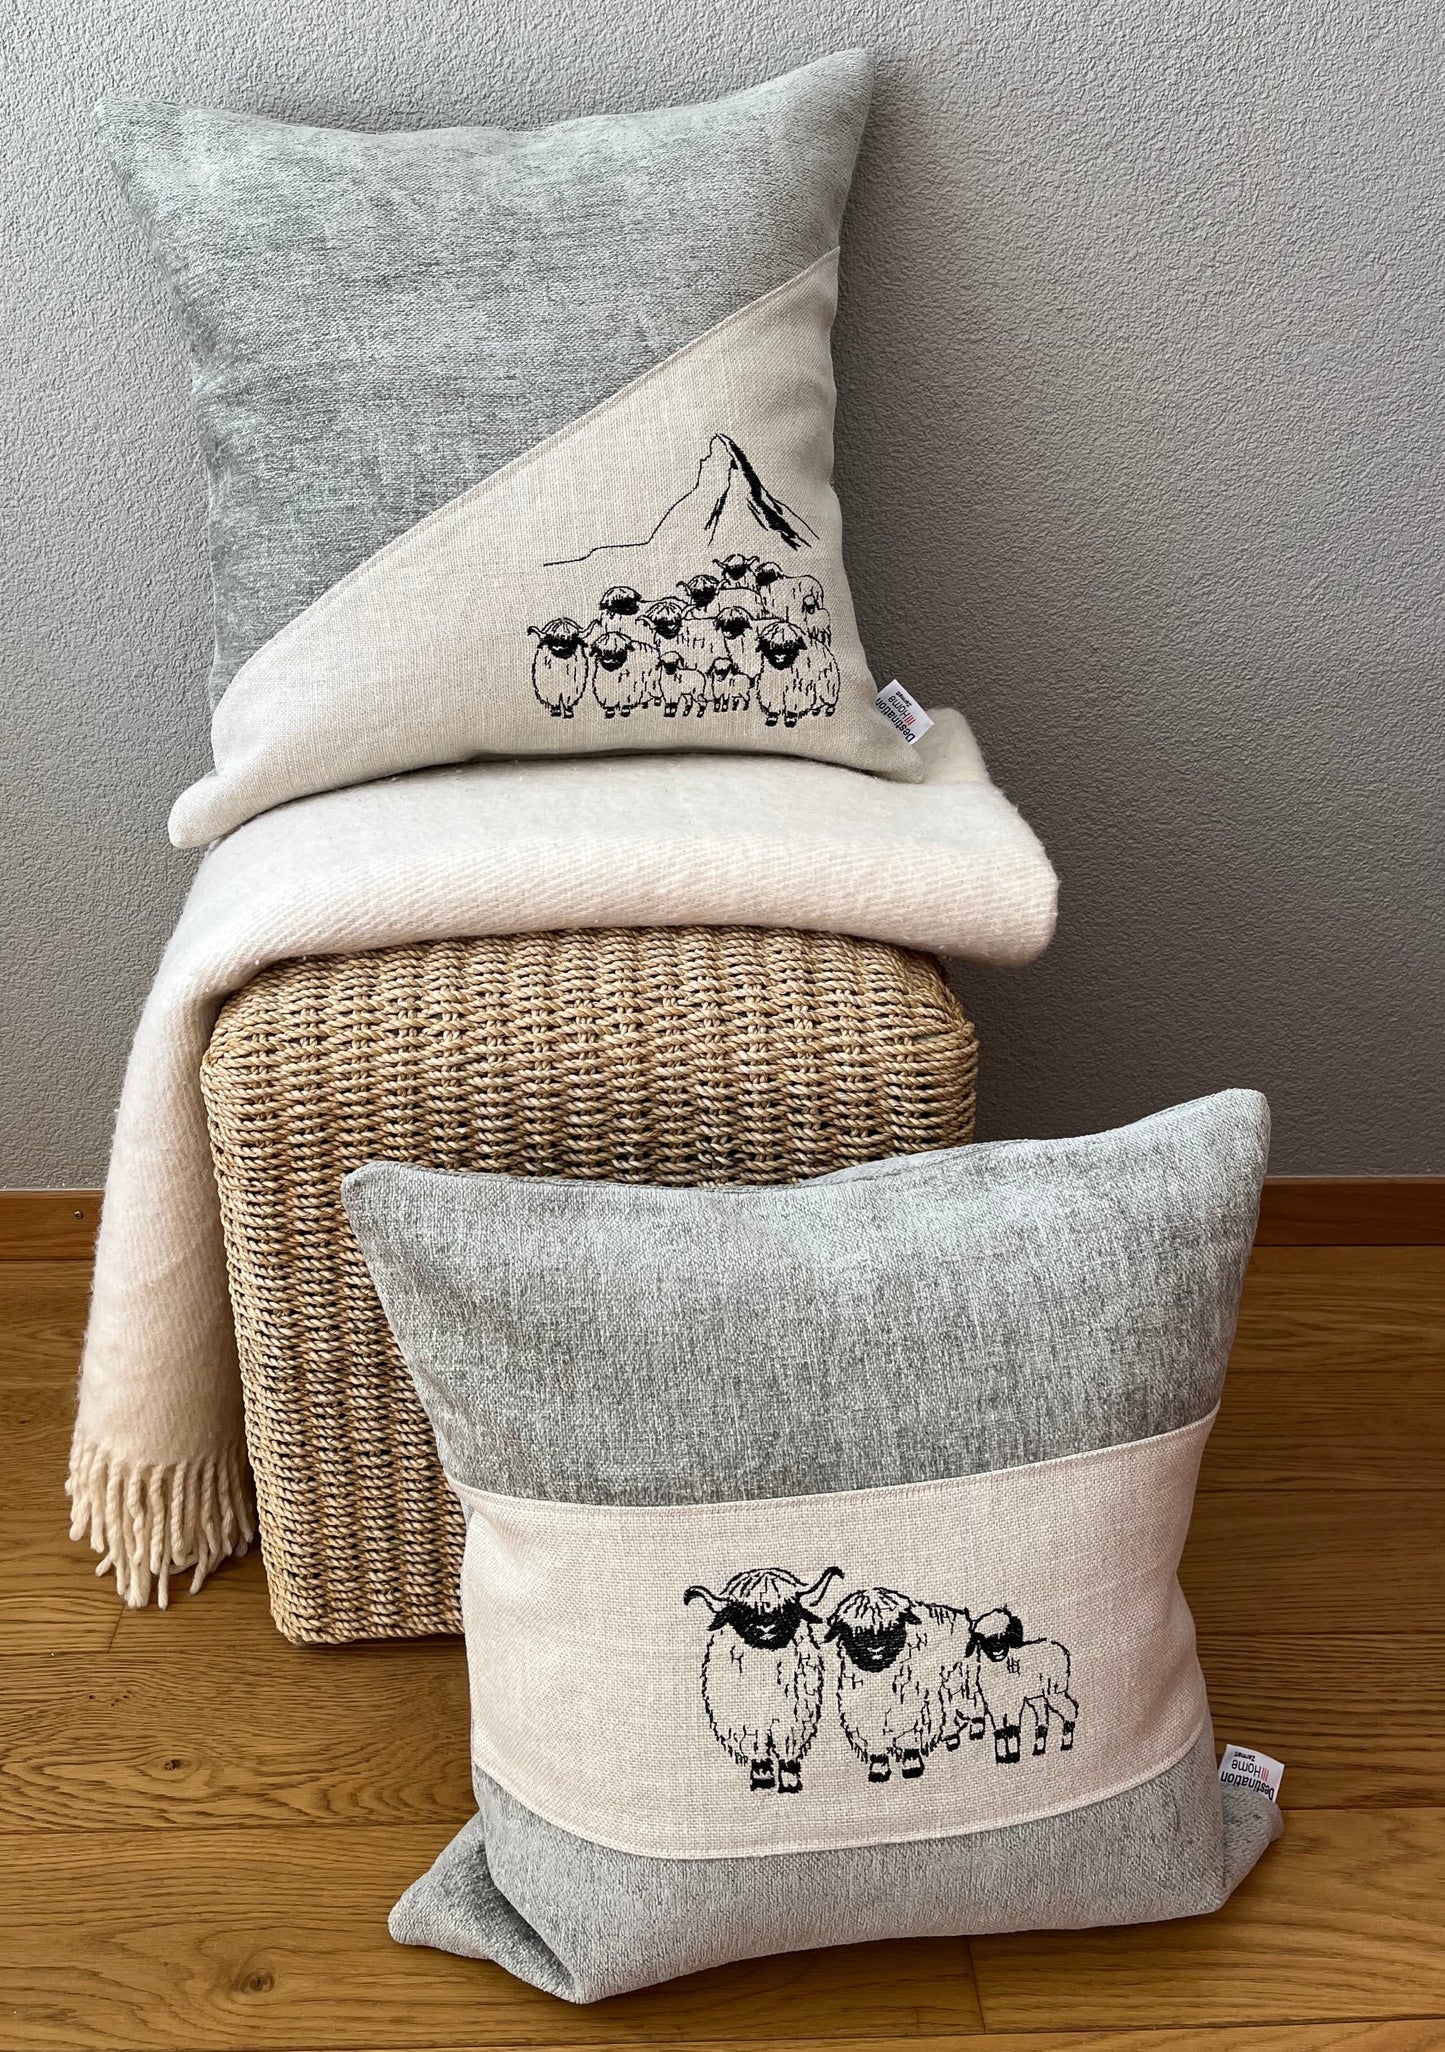 Blacknose Sheep cushion cover, three sheep, grey